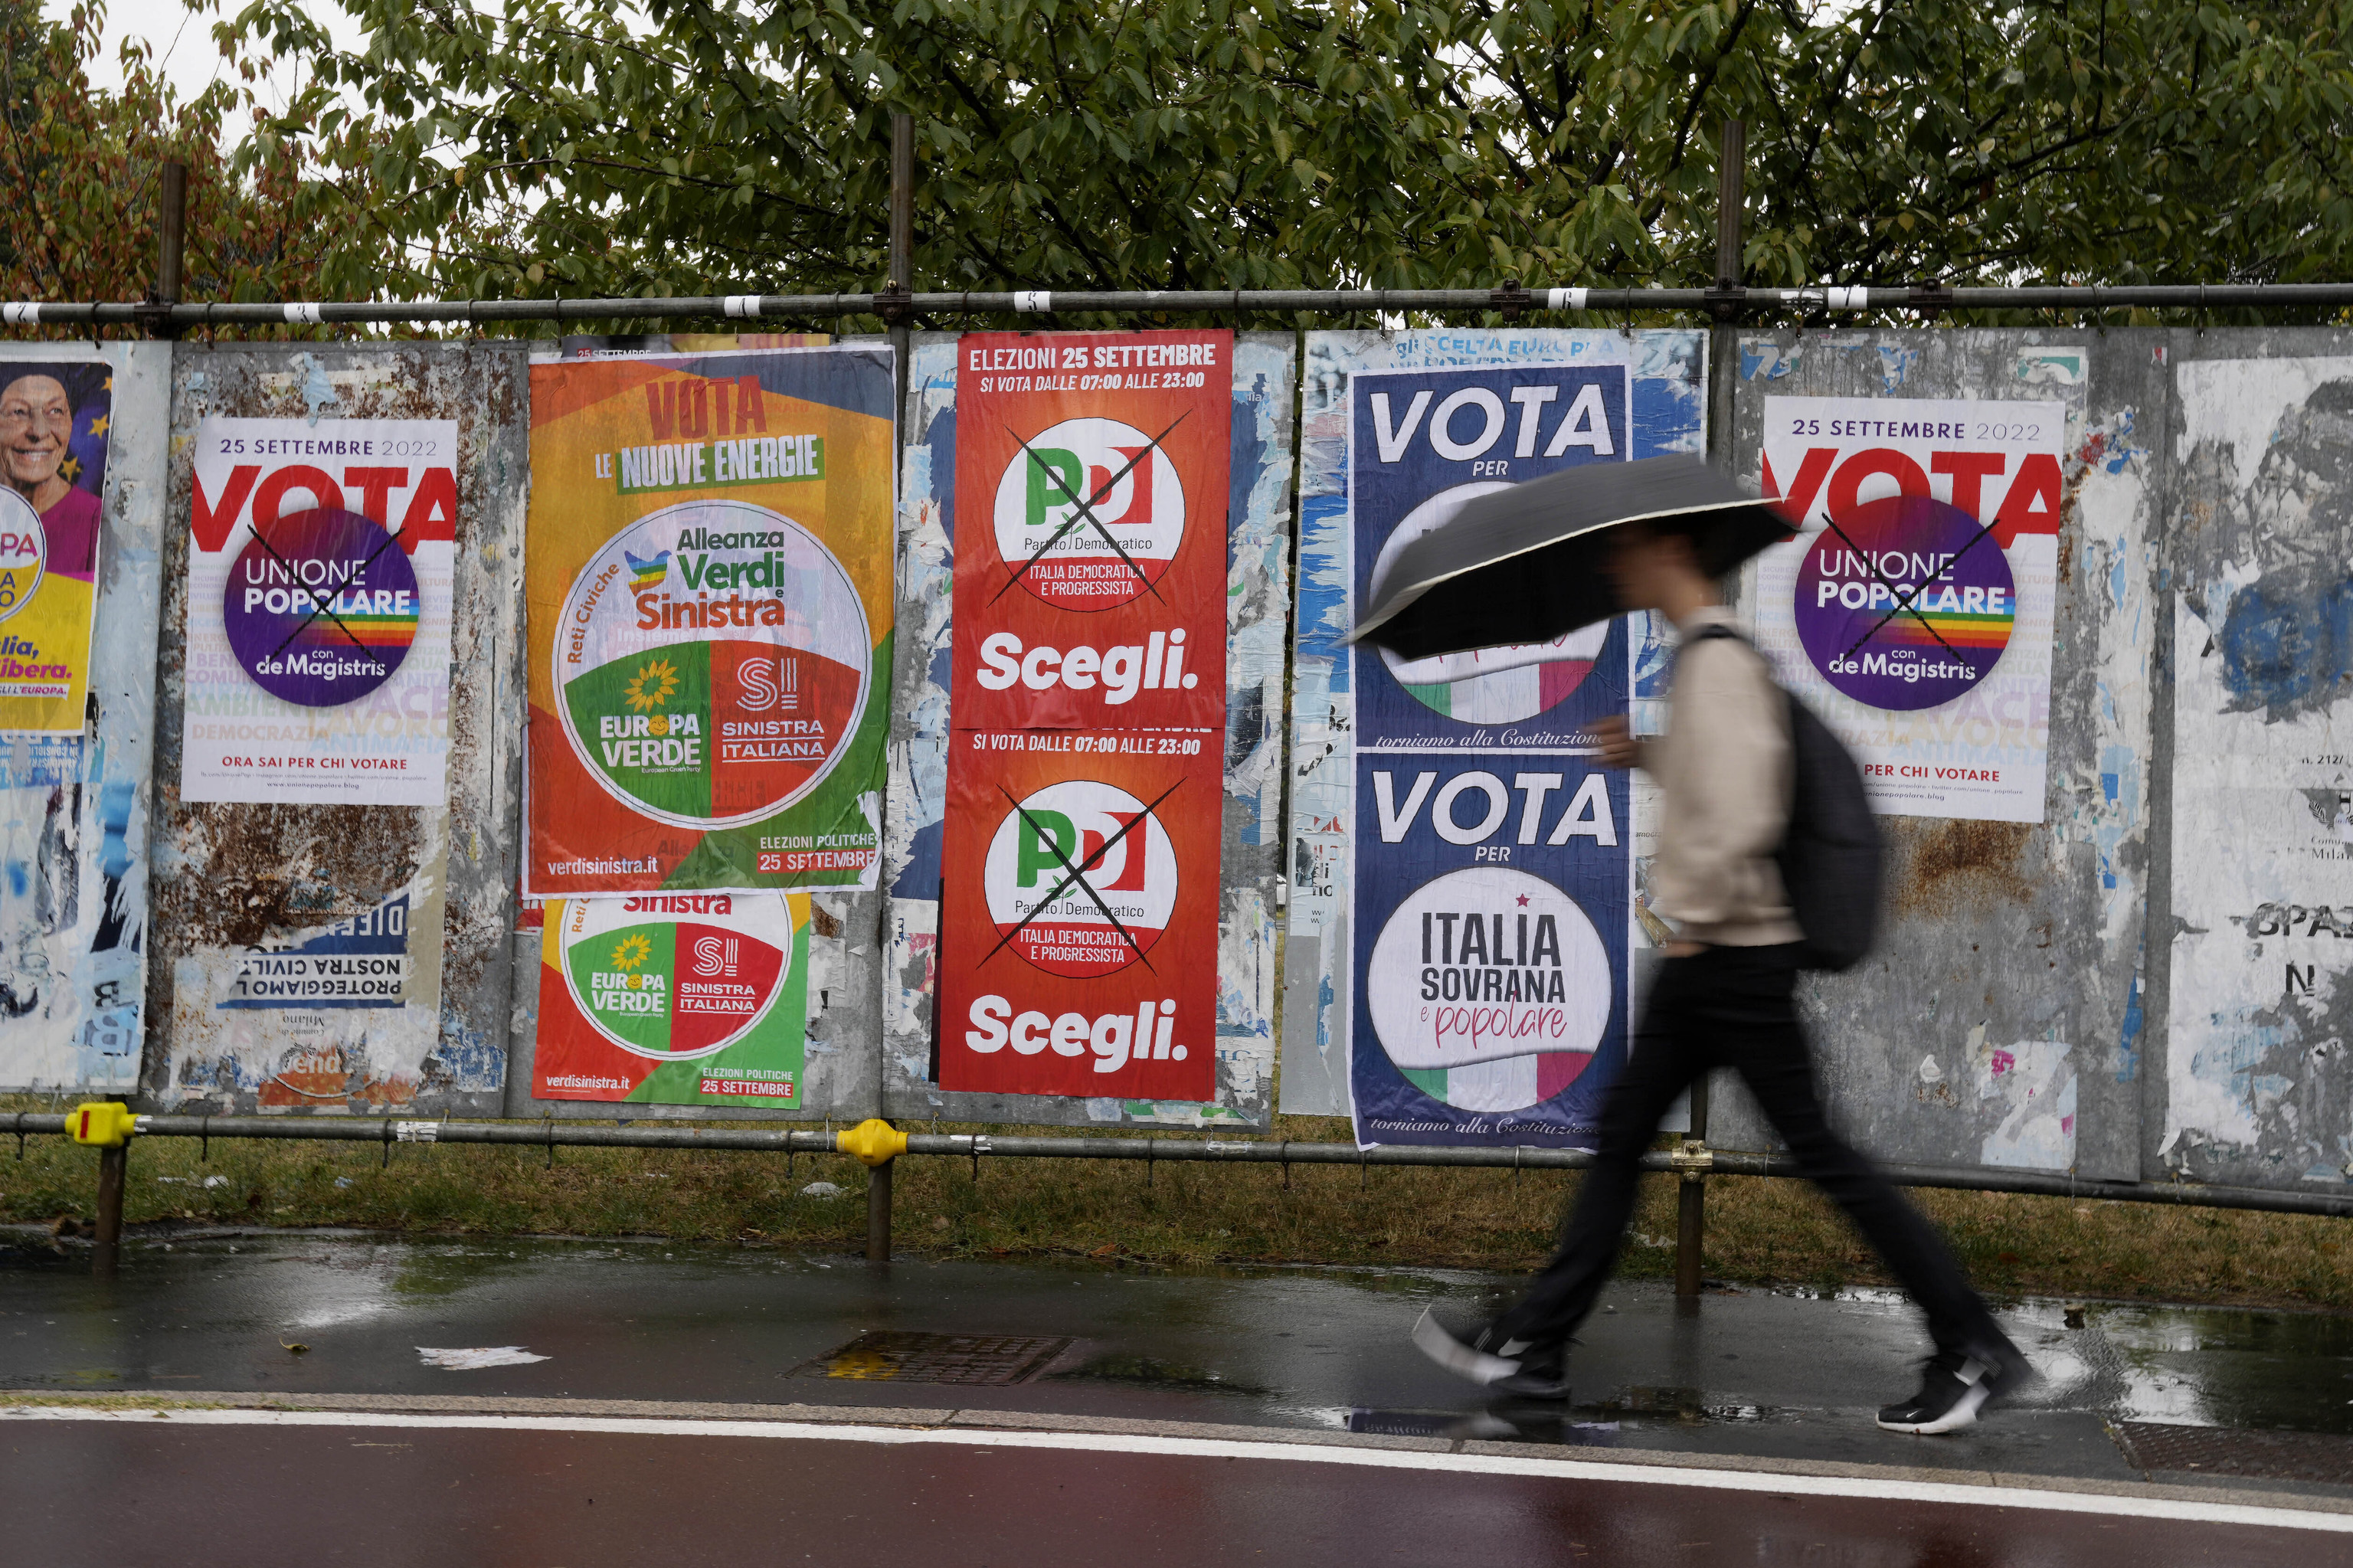 Los italianos votan en una larga jornada electoral: un 19,21% acude hasta mediodía y Meloni se hace esperar